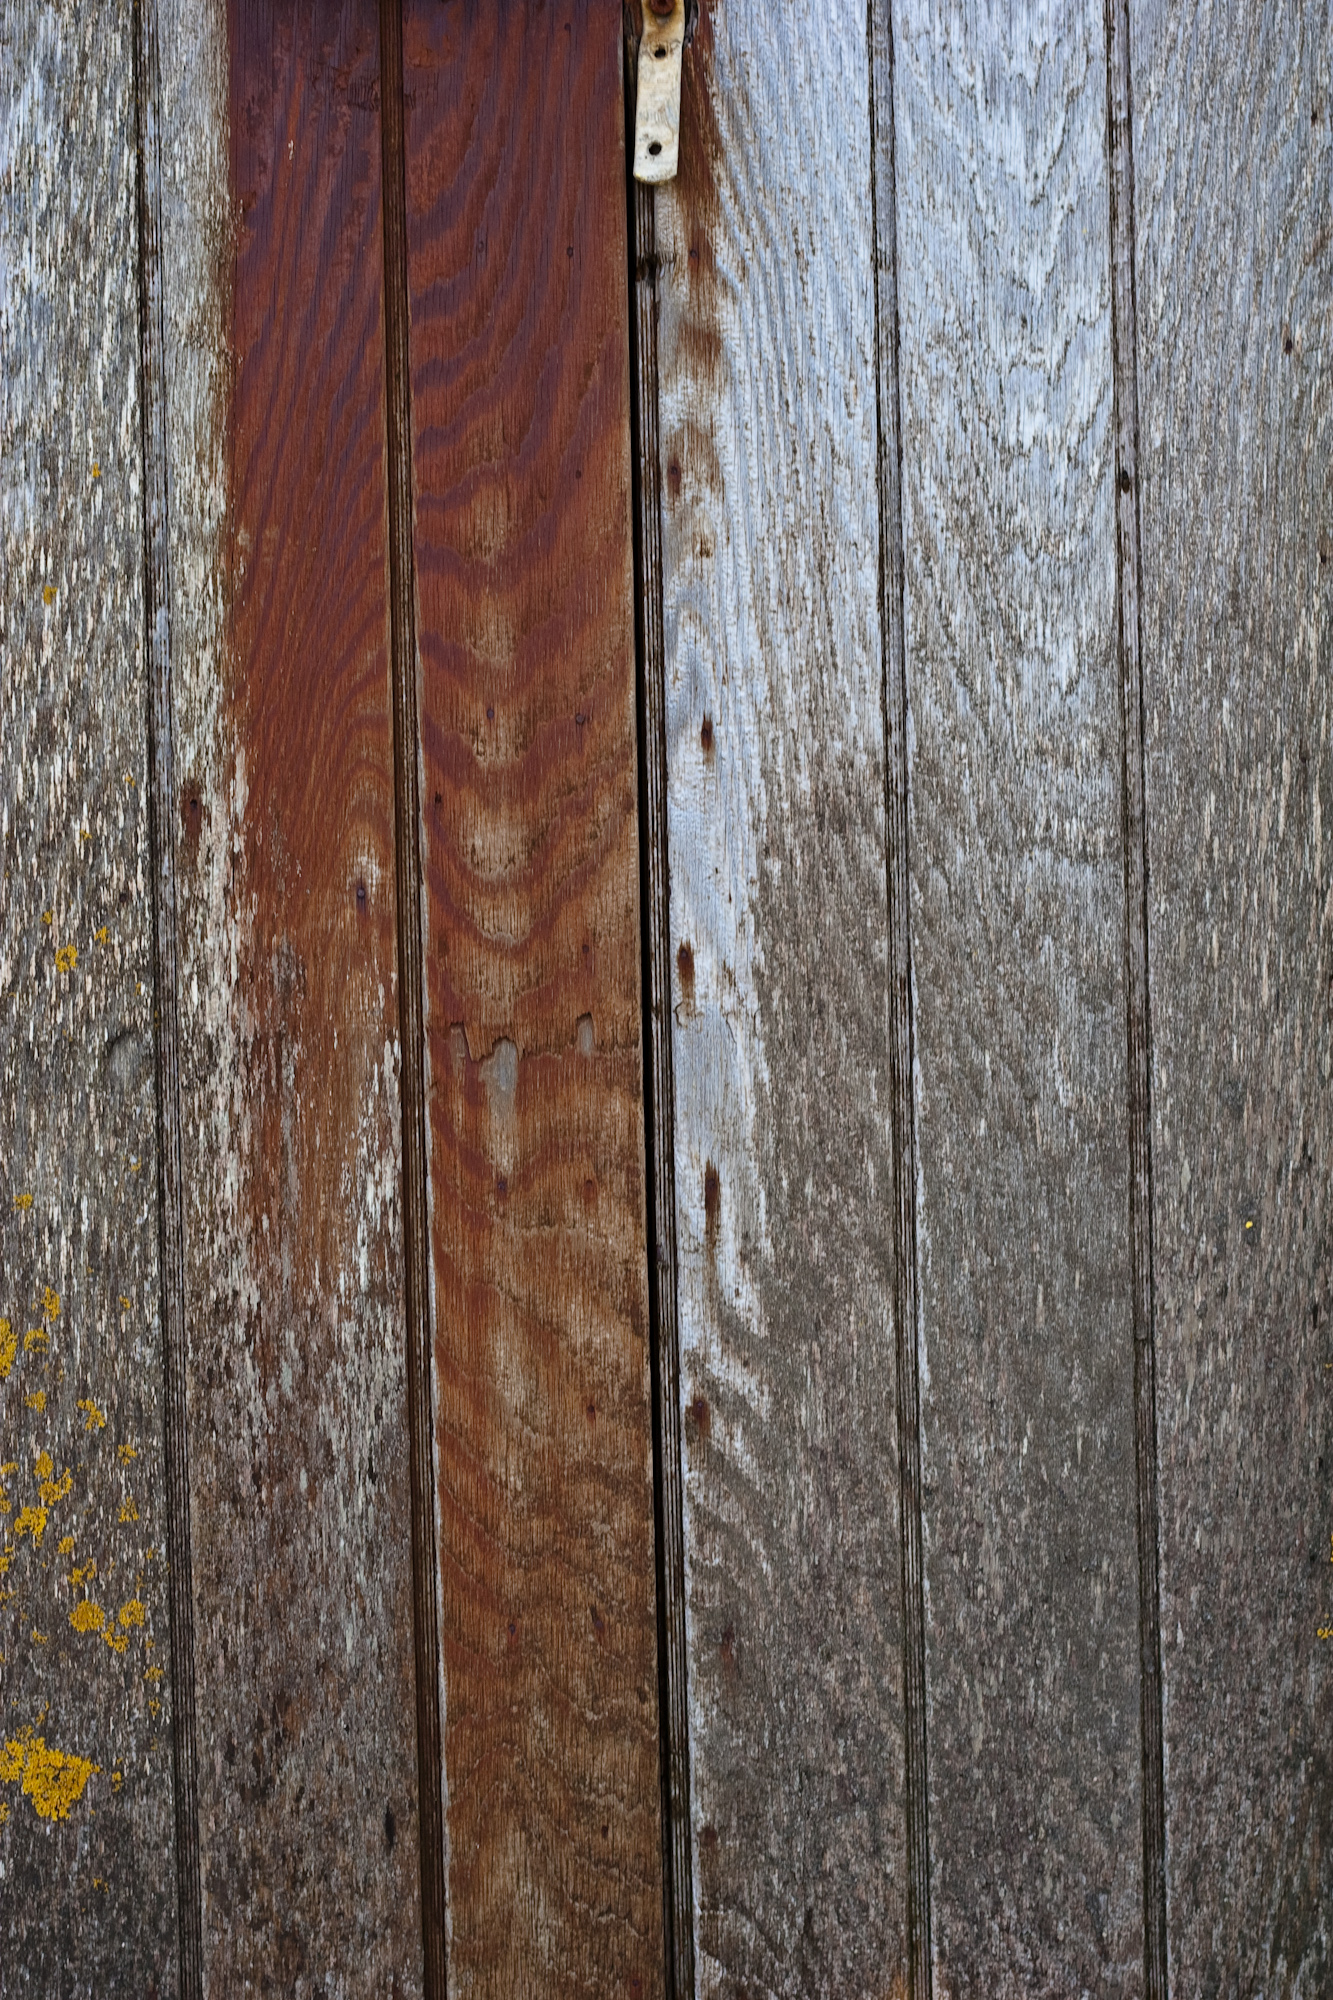 Worn Wood Texture, Door, Paint, Red, Rust, HQ Photo